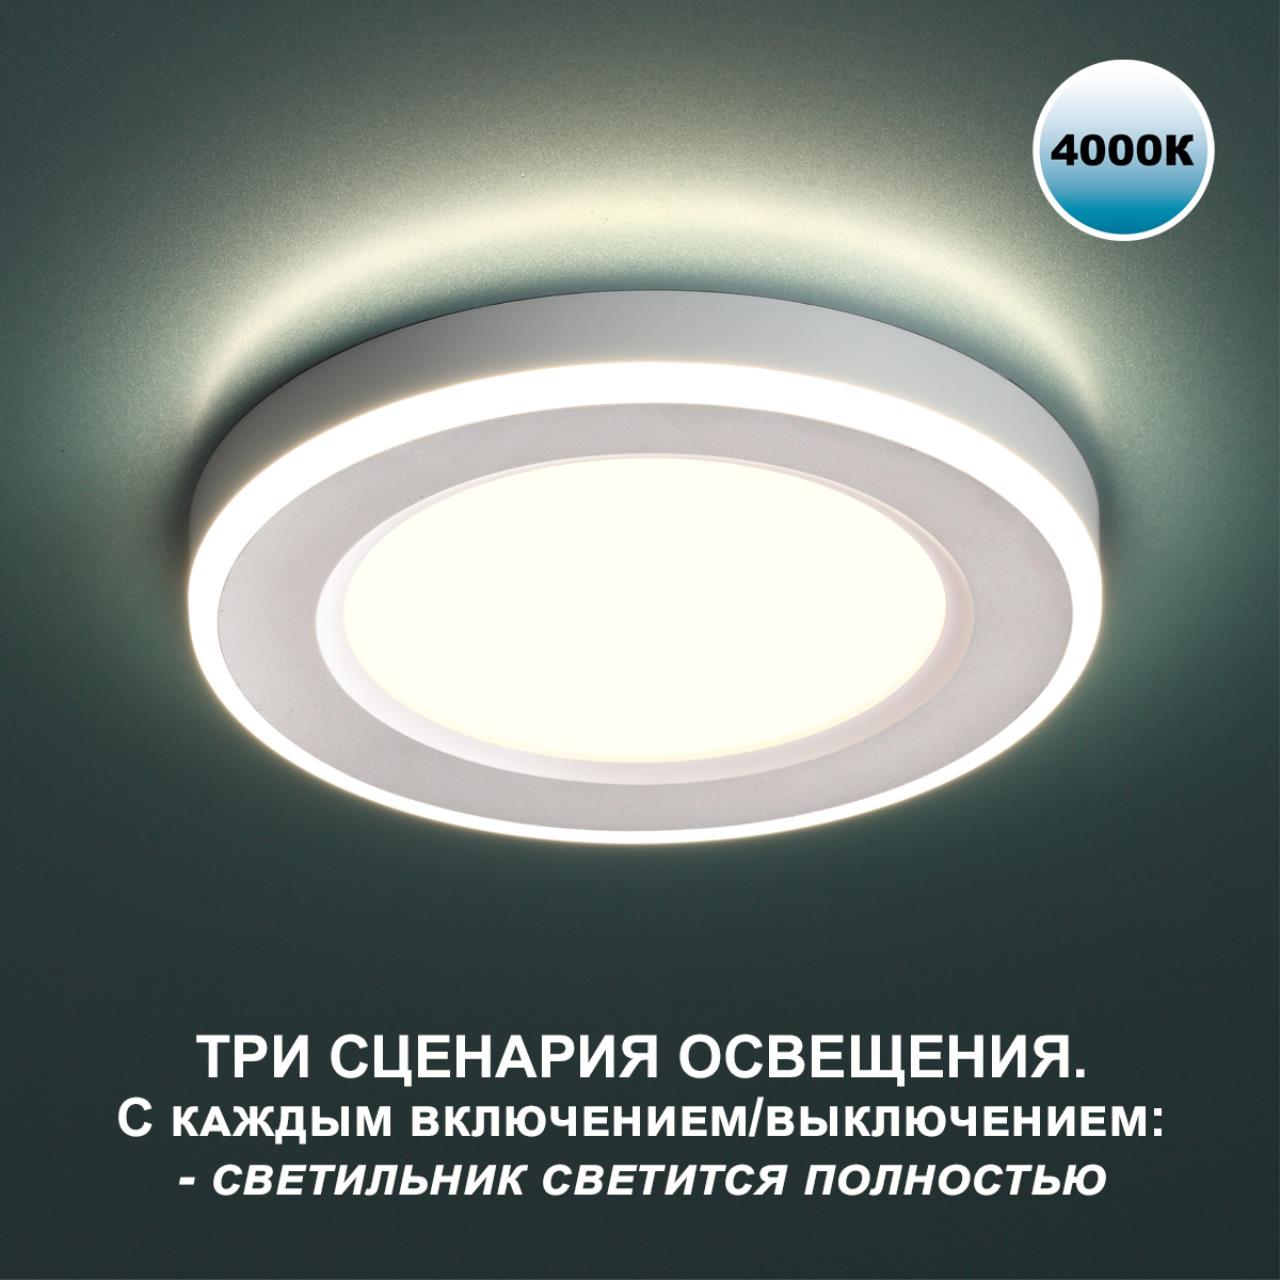 Трёхрежимный встраиваемый светодиодный светильник Novotech SPAN 359016